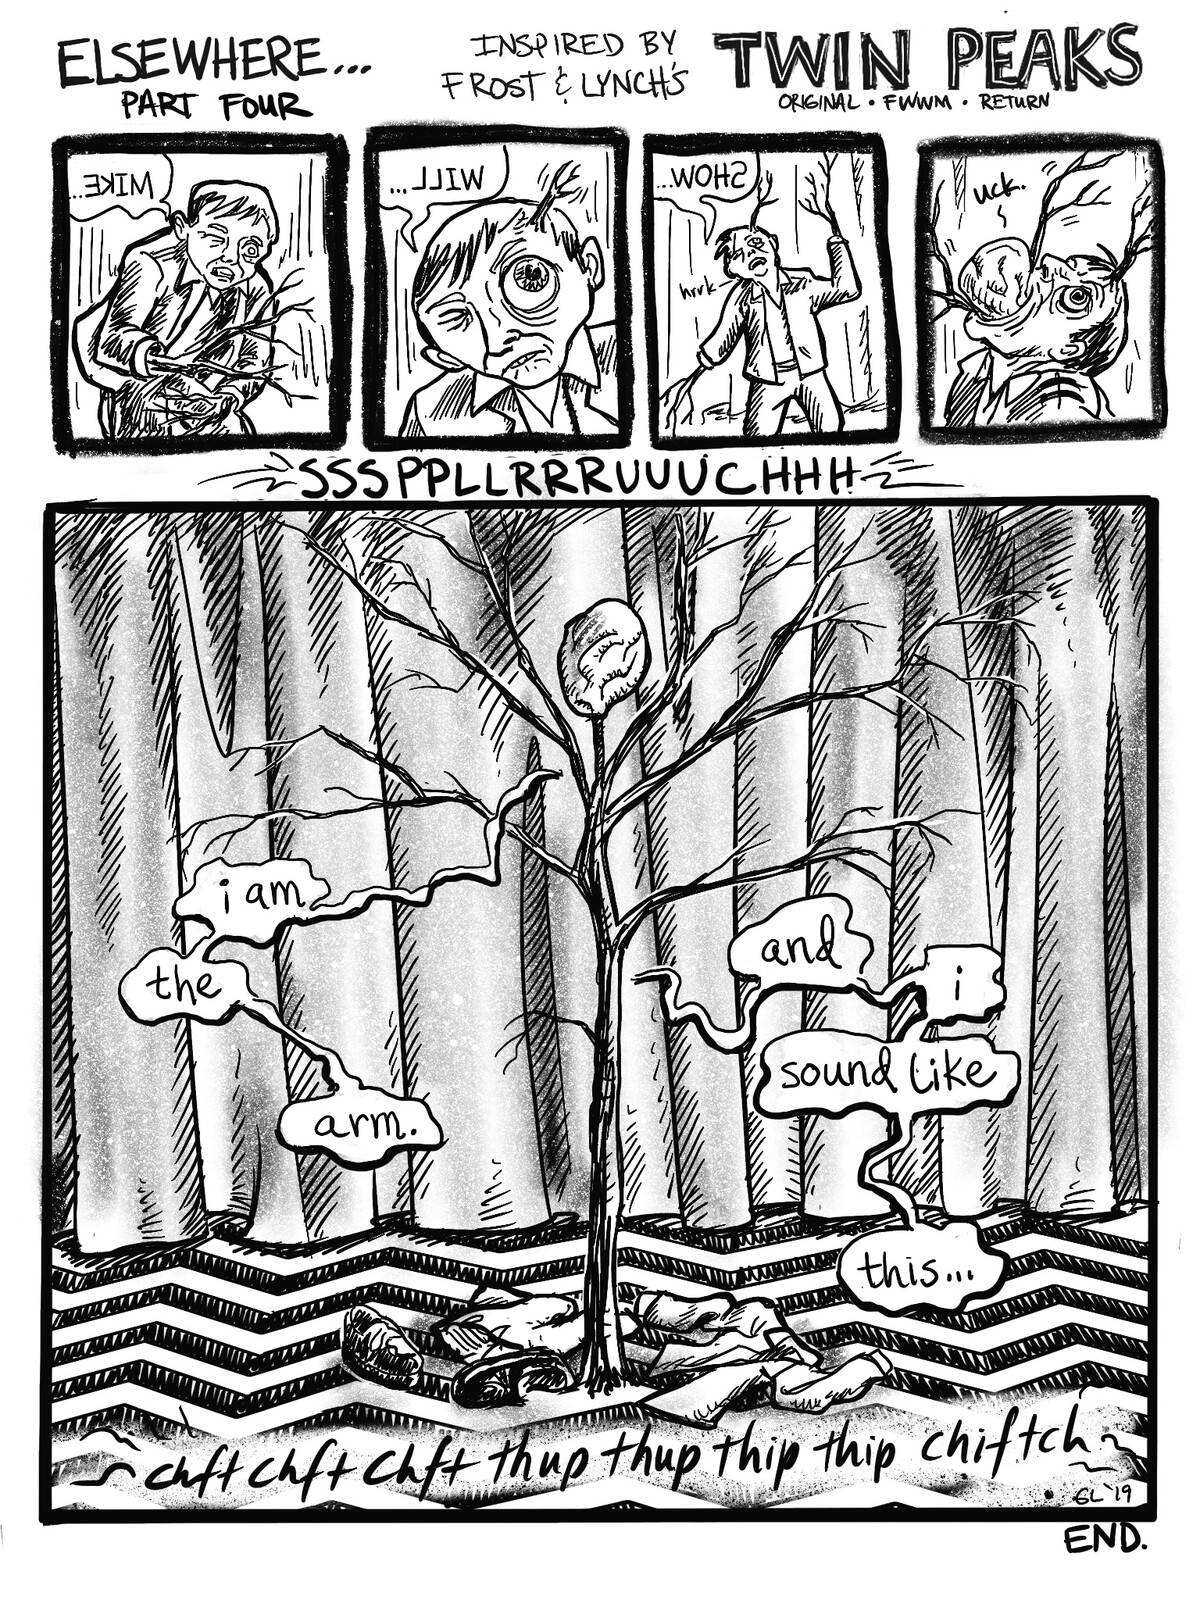 Twin Peaks: Elsewhere
A fan comic. Page 4